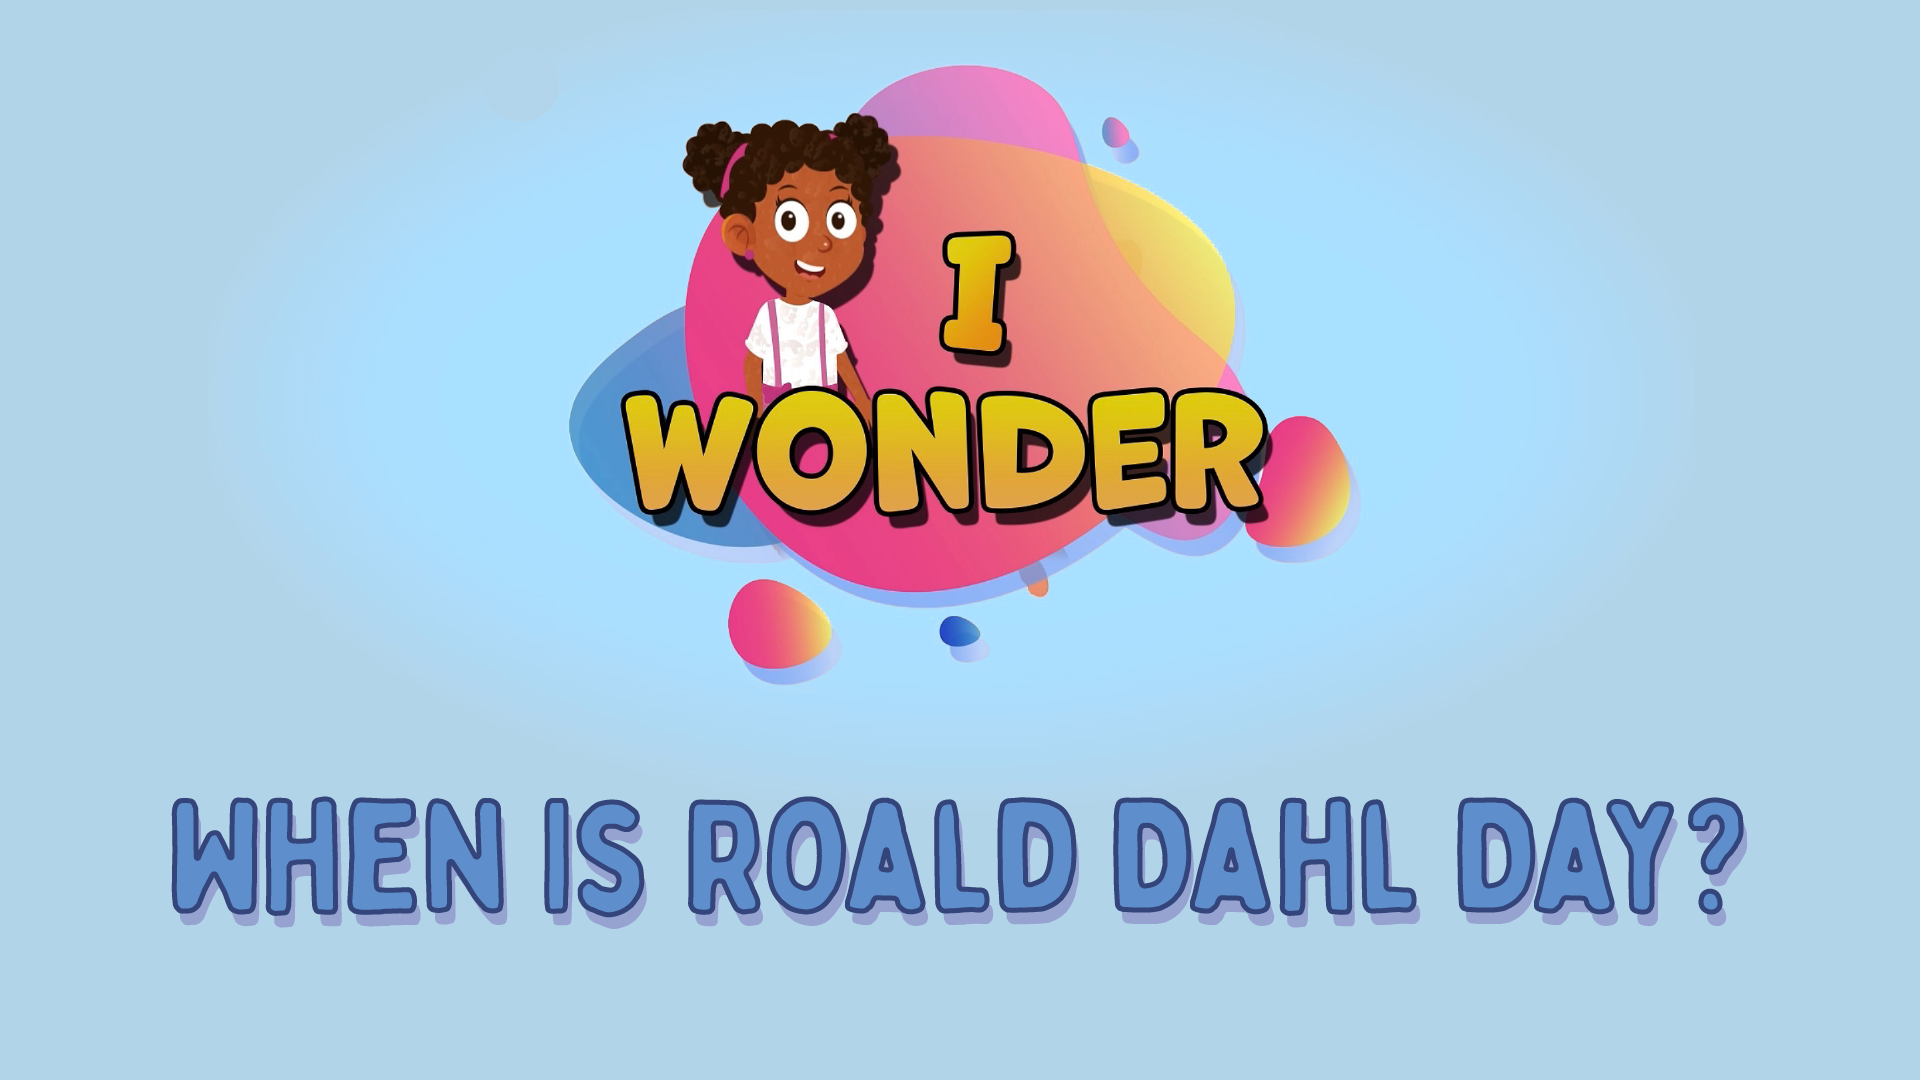 When Is Roald Dahl Day?